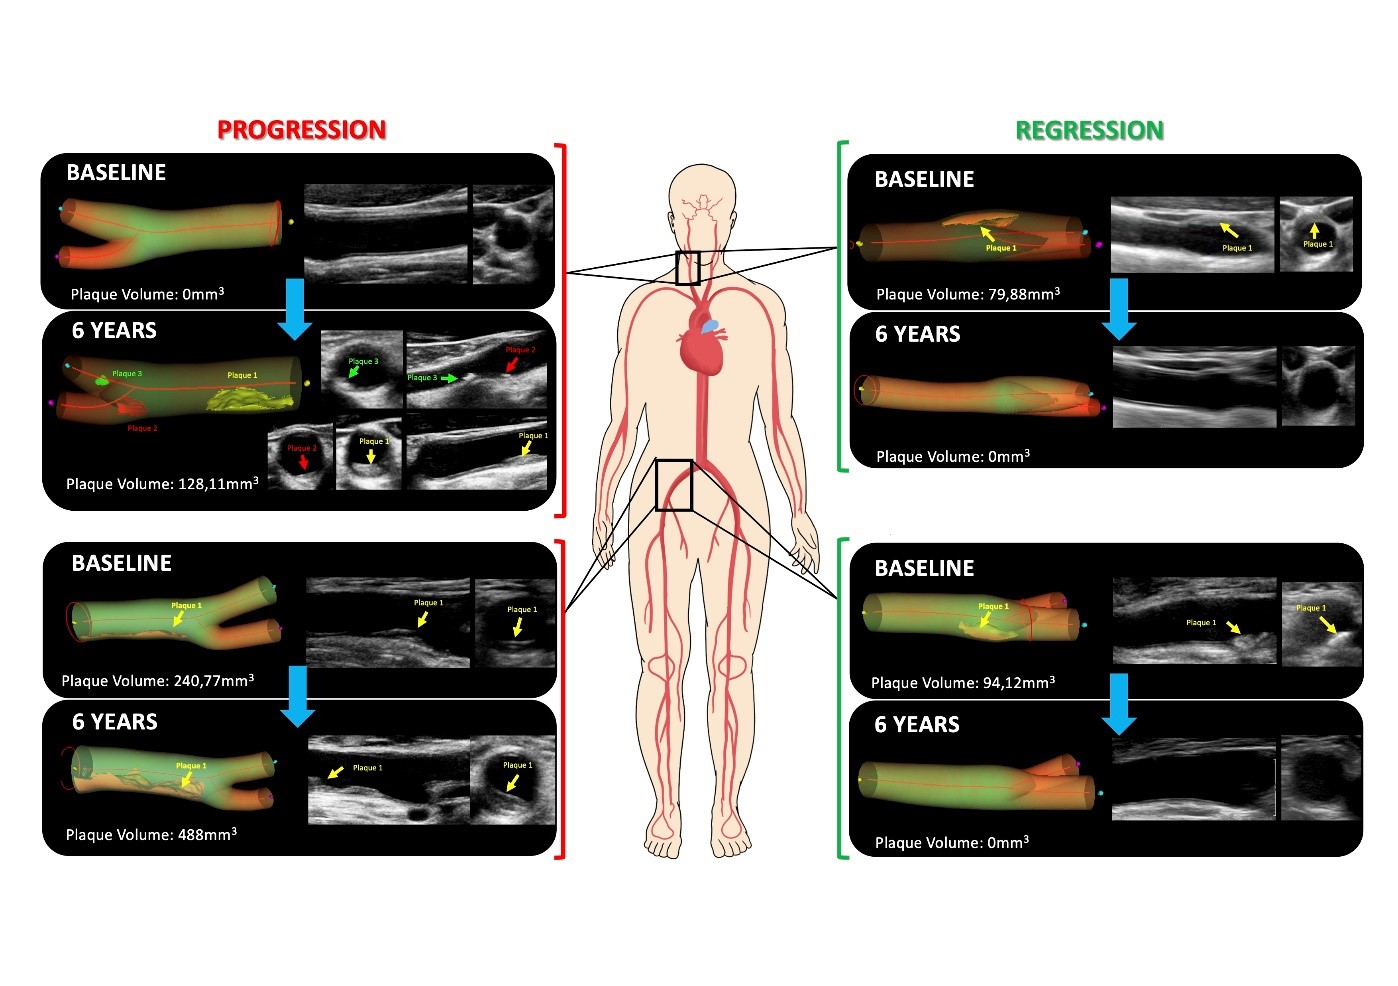 Casos de progresión de aterosclerosis (izquierda) y de regresión (desaparición de la misma, derecha)  en arterias carótidas (en el cuello) en las femorales (ingles). En cada caso se muestra el estudio basal (en la inclusión del participante, baseline) y el estudio 6 años después de la misma arteria. En cada caso, las imágenes de la derecha son las directamente obtenidas por el ecógrafo vascular, y a la izquierda la reconstrucción tridimensional.